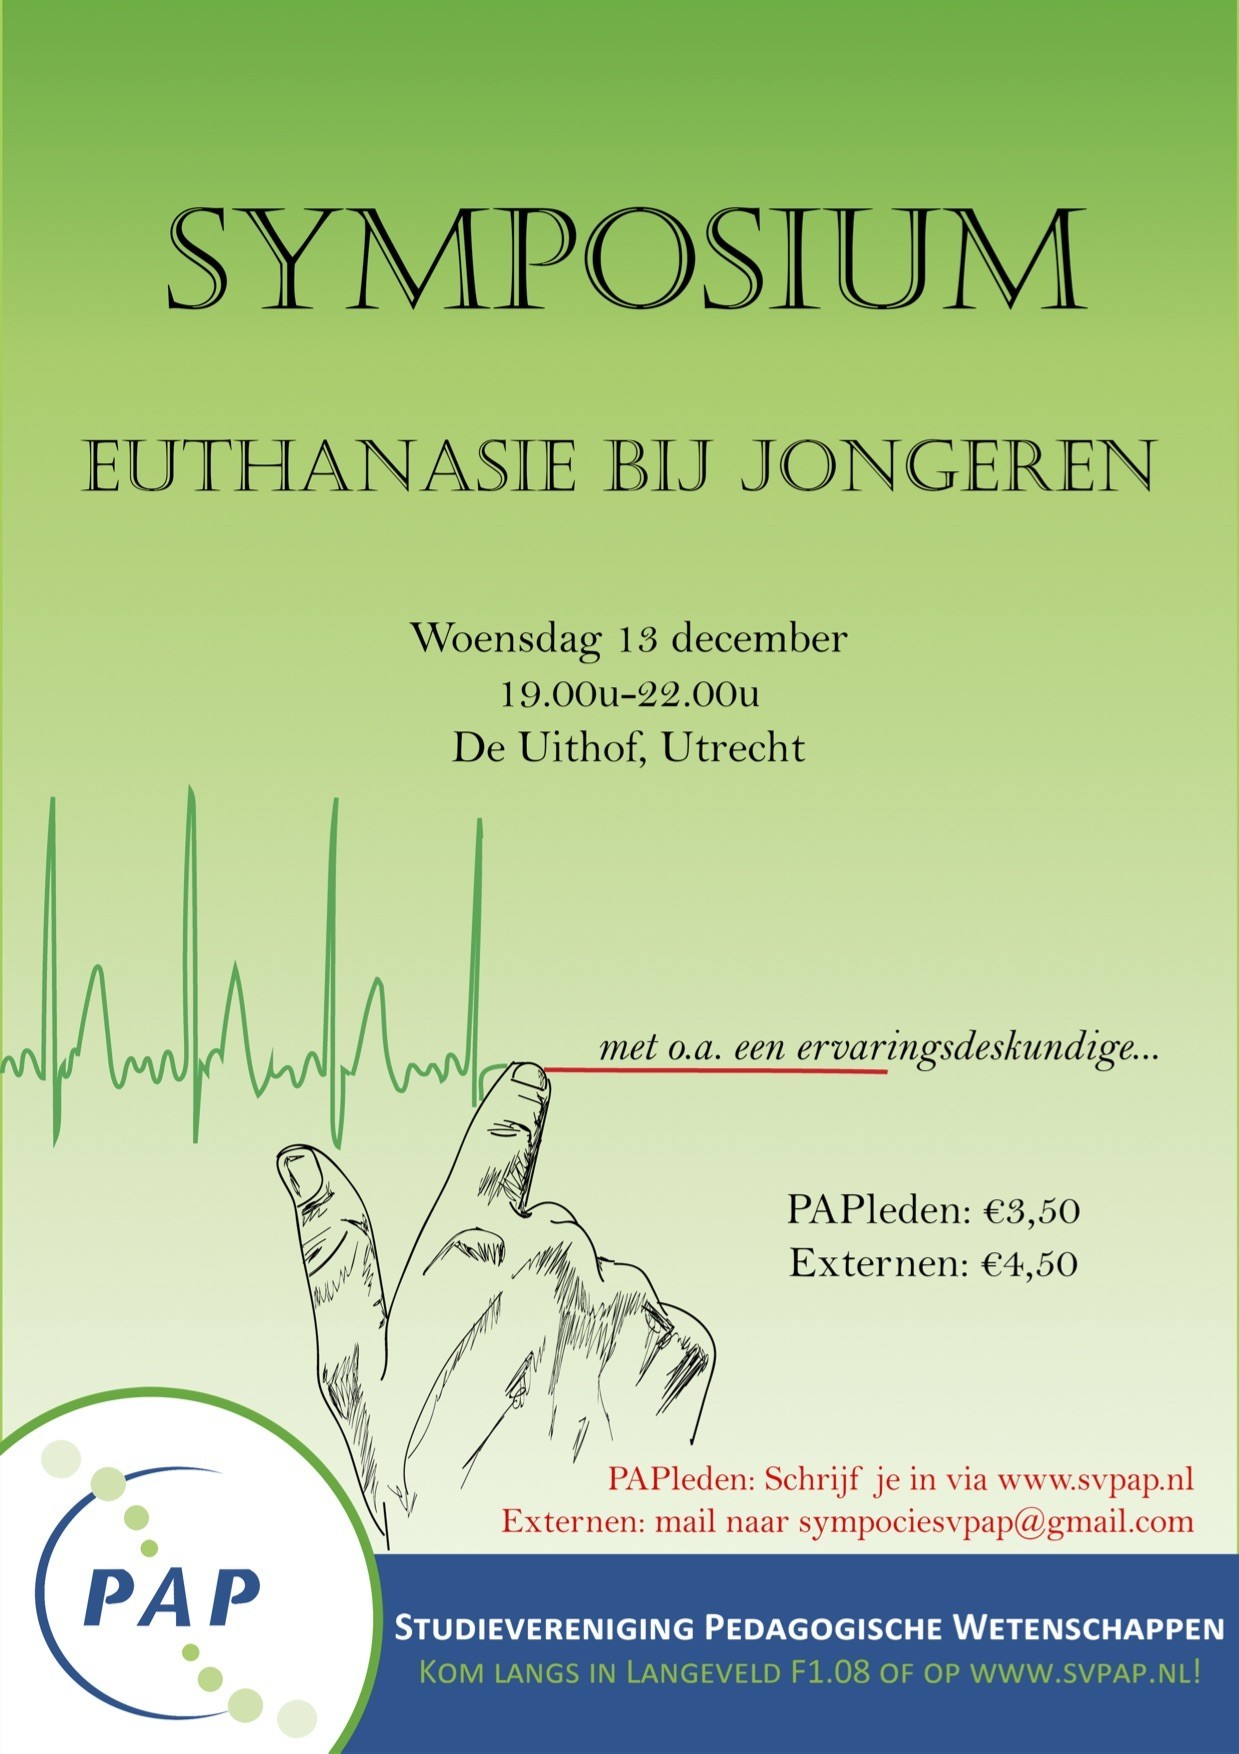 Symposium: Euthanasie